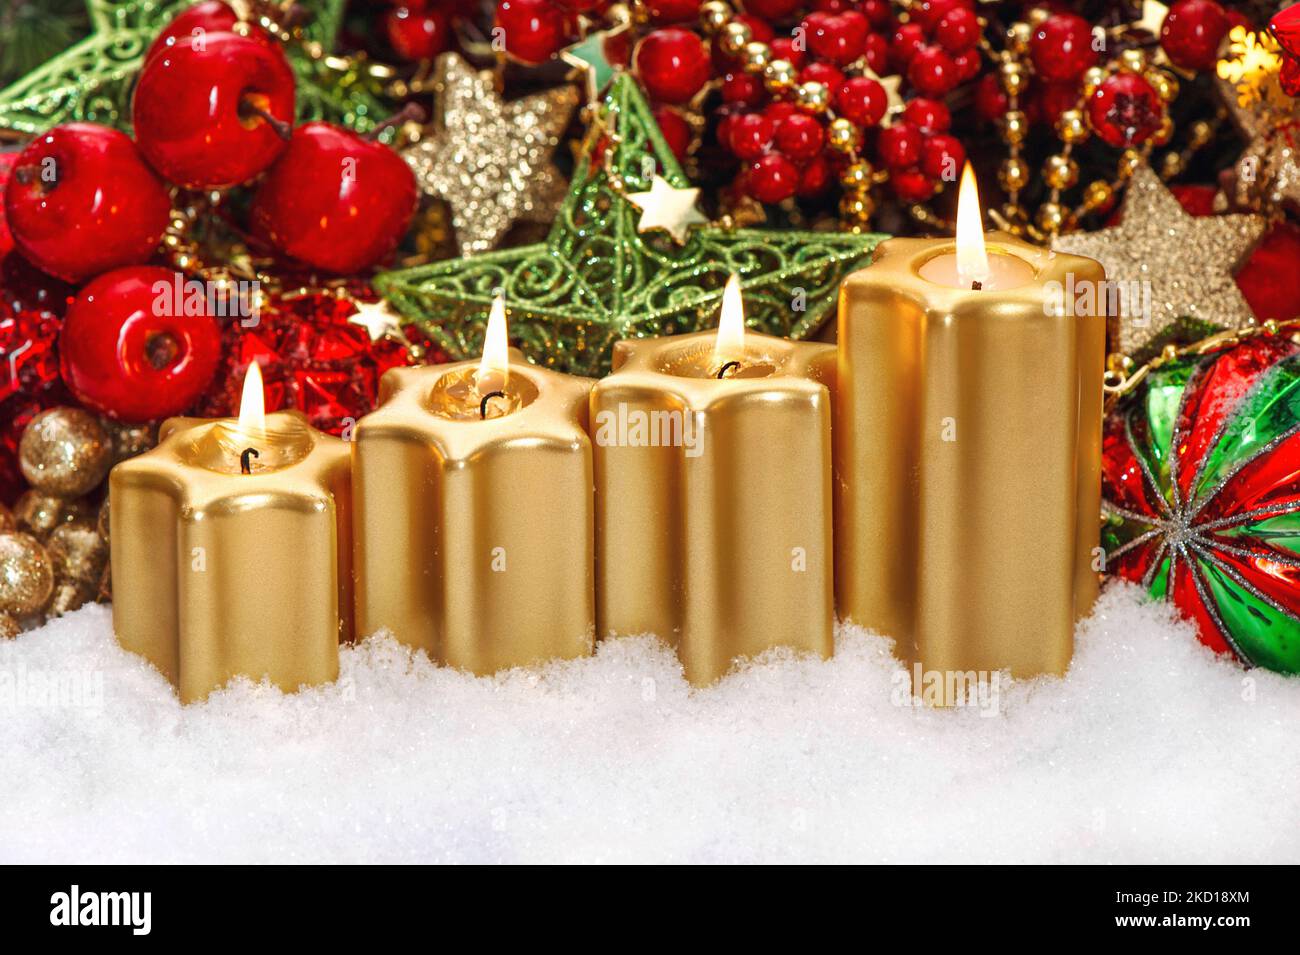 Quatre bougies allumées rouge ornements Noël décoration de l'Avent Banque D'Images